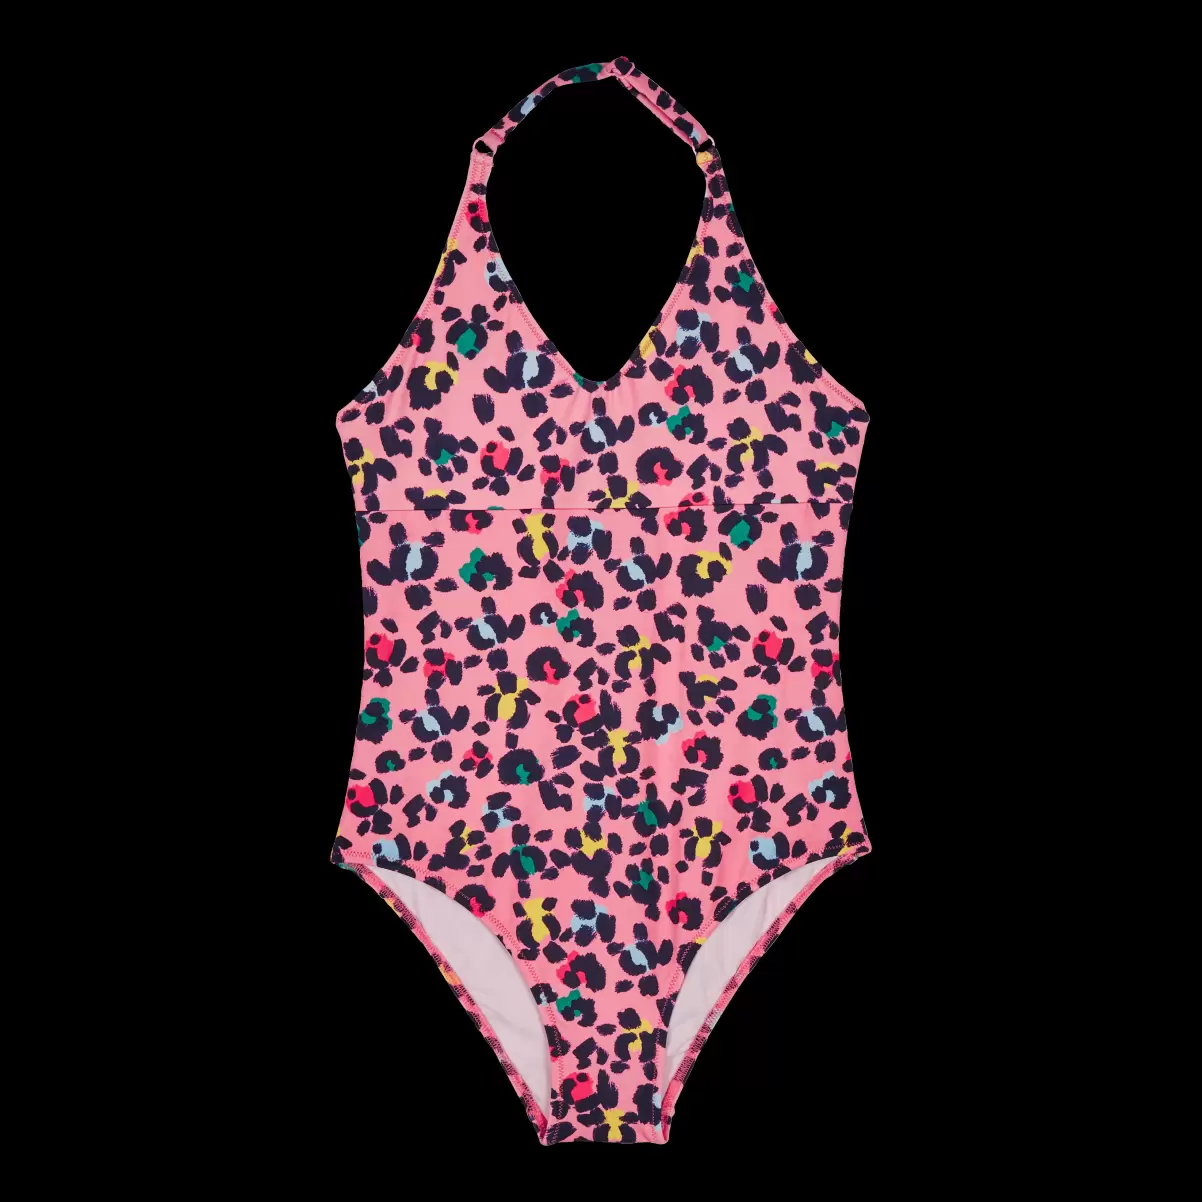 Badeanzug Turtles Leopard Badeanzug Für Mädchen Reduzierter Preis Vilebrequin Mädchen Bonbon / Rosa